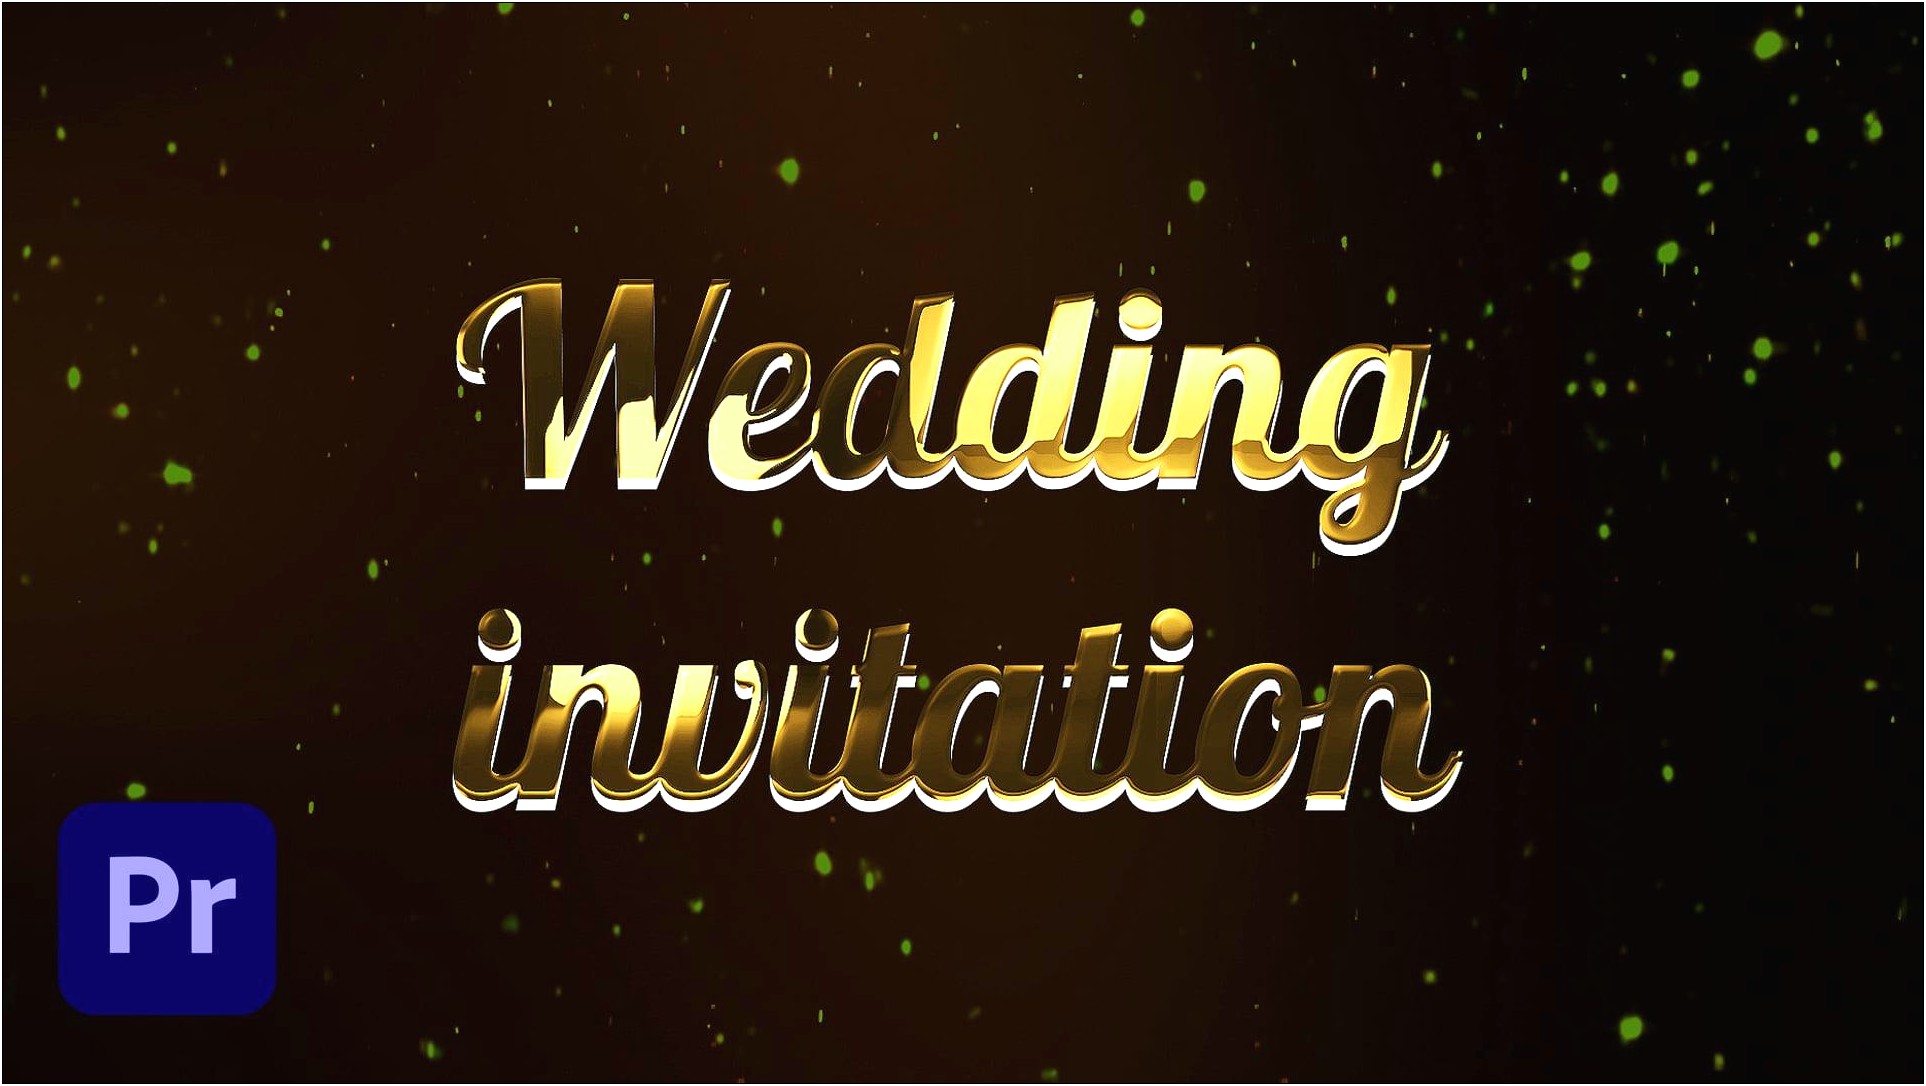 Premiere Pro Wedding Invitation Templates Free Download